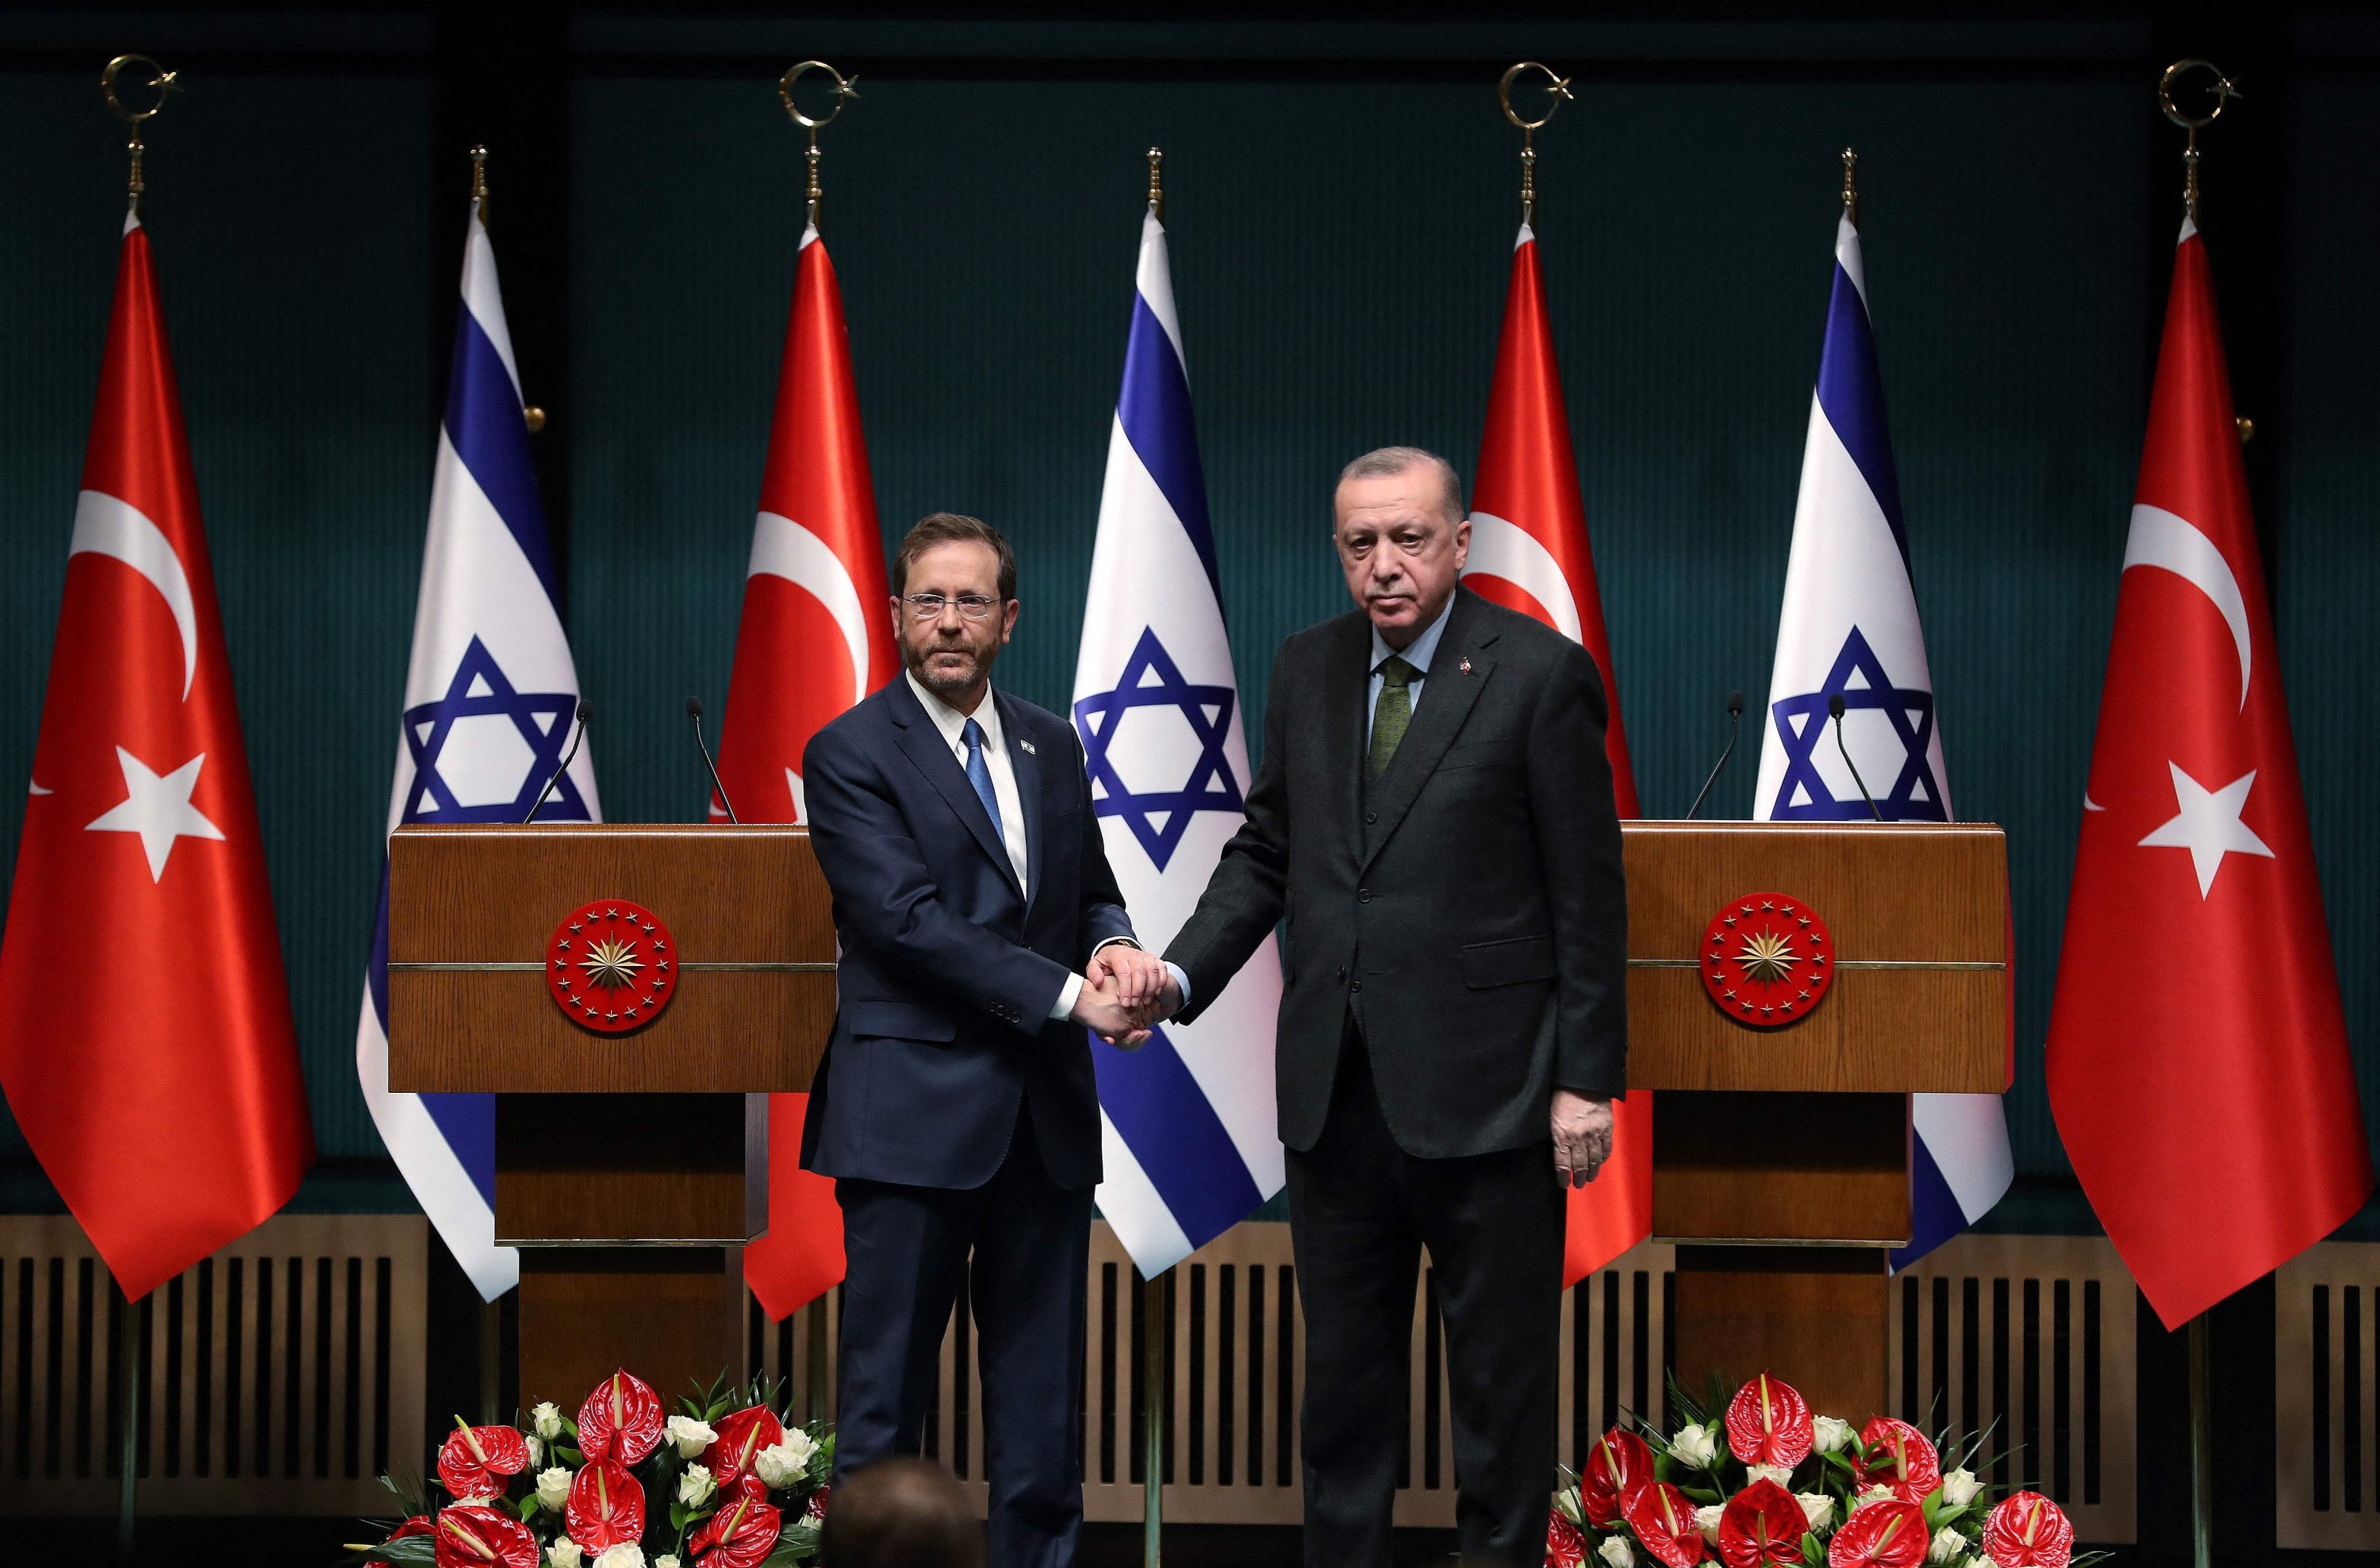 Presiden Israel Isaac Herzog (kiri) dan Presiden Recep Tayyip Erdoğan berjabat tangan selama konferensi pers di ibu kota Ankara, Turki, 9 Maret 2022. (AFP Photo)